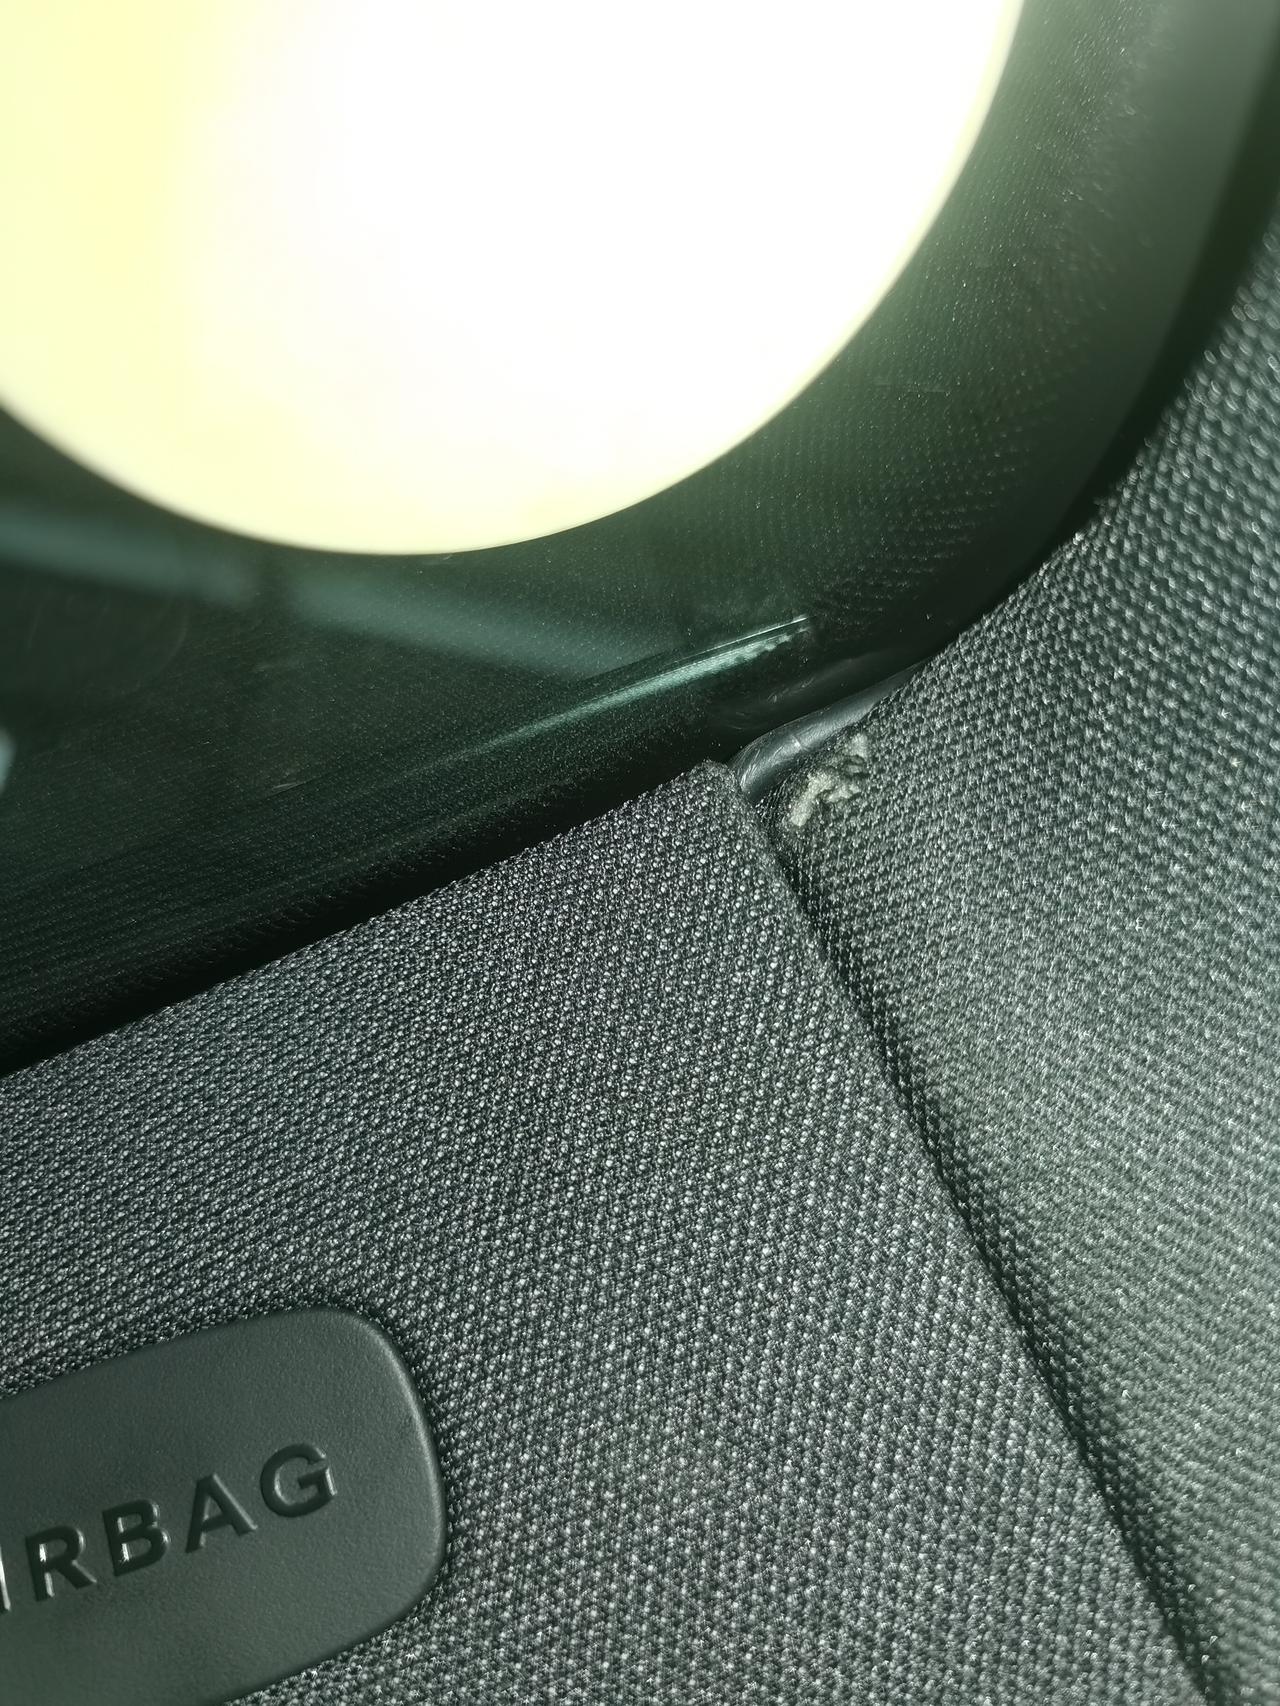 奔驰GLC 安装行车记录仪的师傅把副驾驶车窗上面顶布弄破了一个小洞，有方法修复吗？